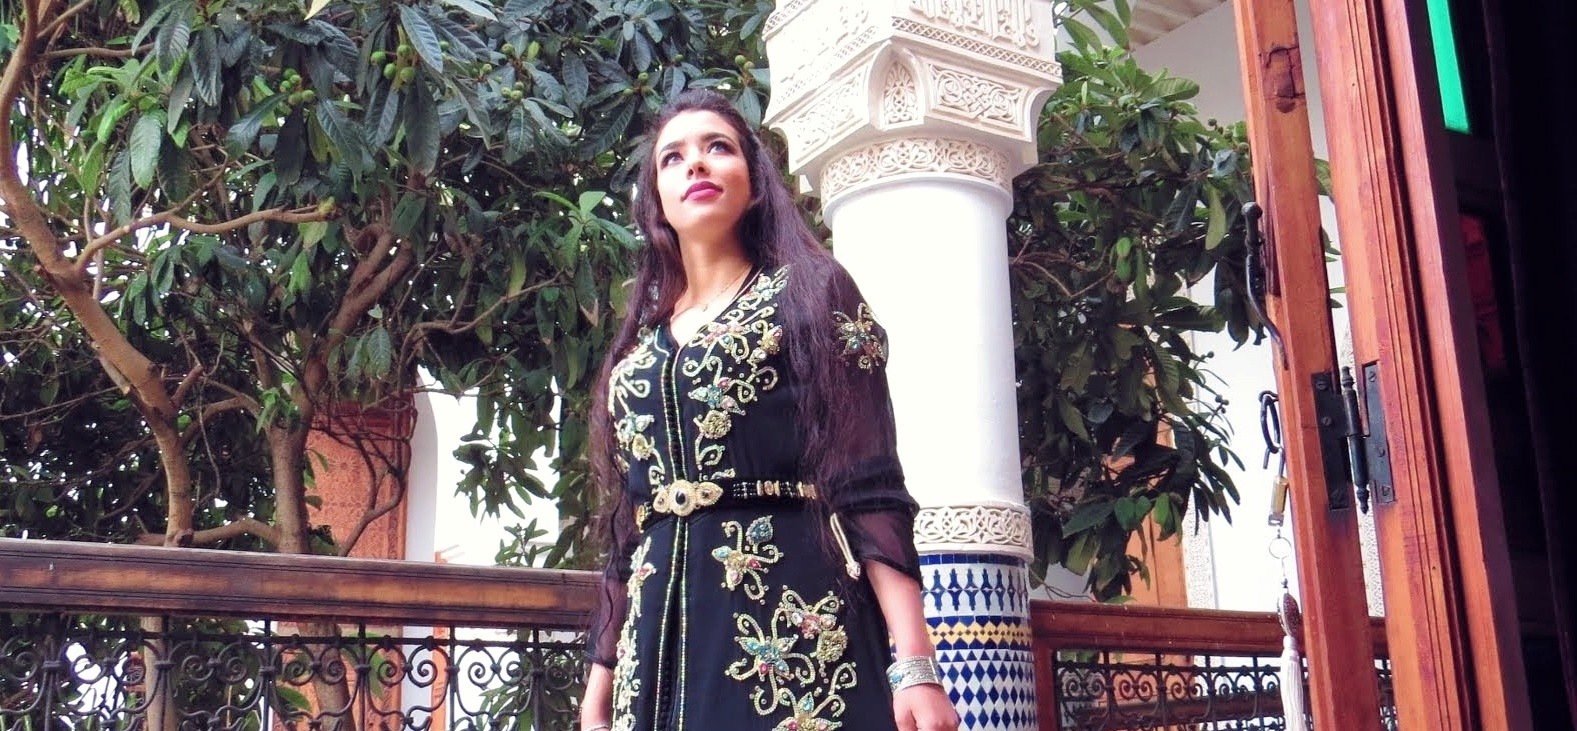 المغربية زينب شومان , ملكة جمال ويلتشاير ٢٠٢٠ تترشح للقب ملكة جمال الجزر البريطانية ٢٠٢٠ 